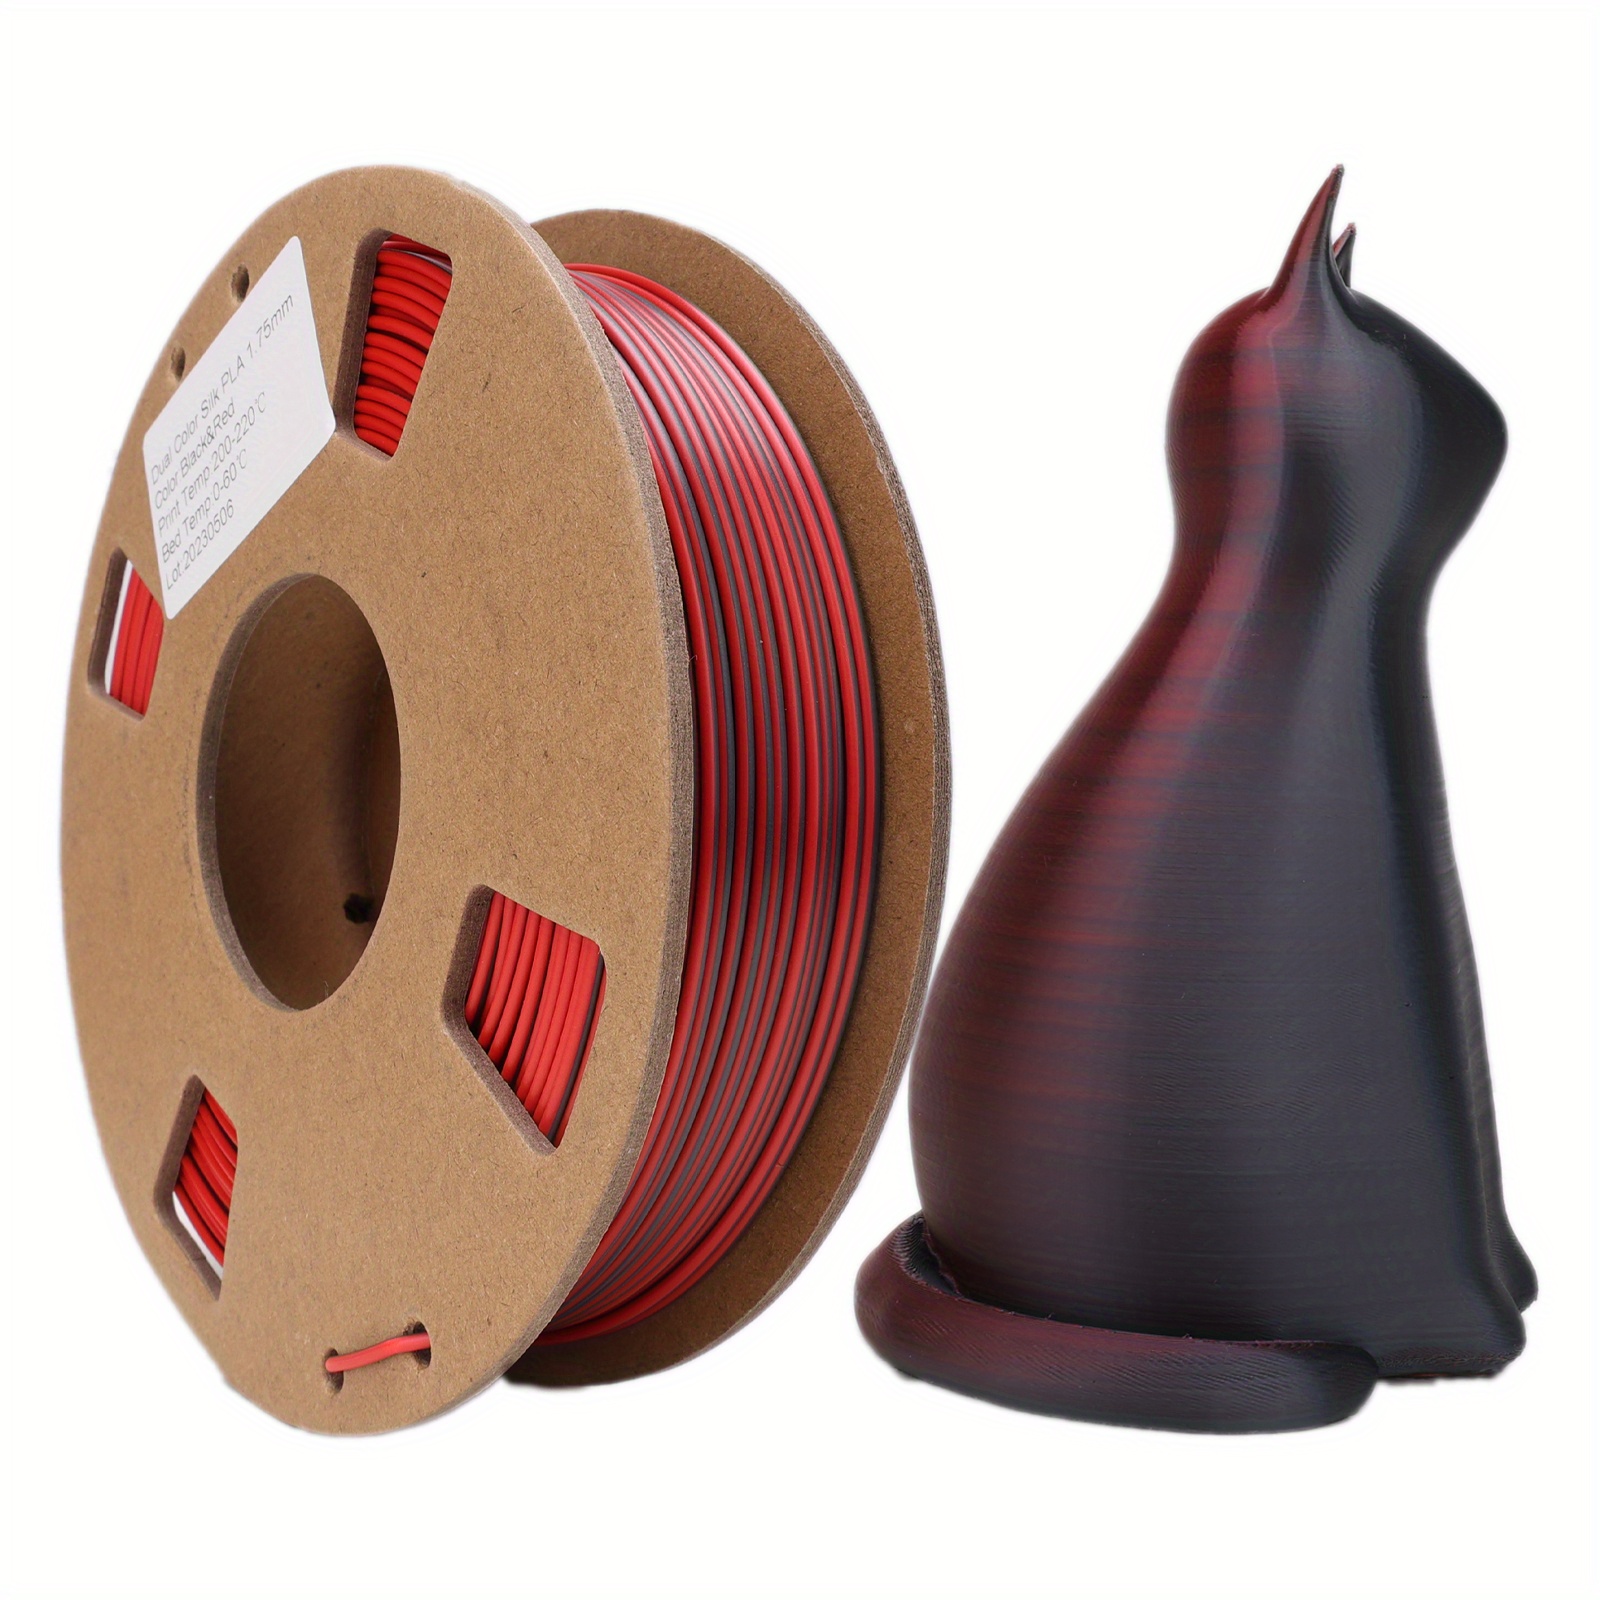 Filamento de impresora D, Filamento de impresora 3D Filamento largo  Filamento PLA construido para precisión Jadeshay A